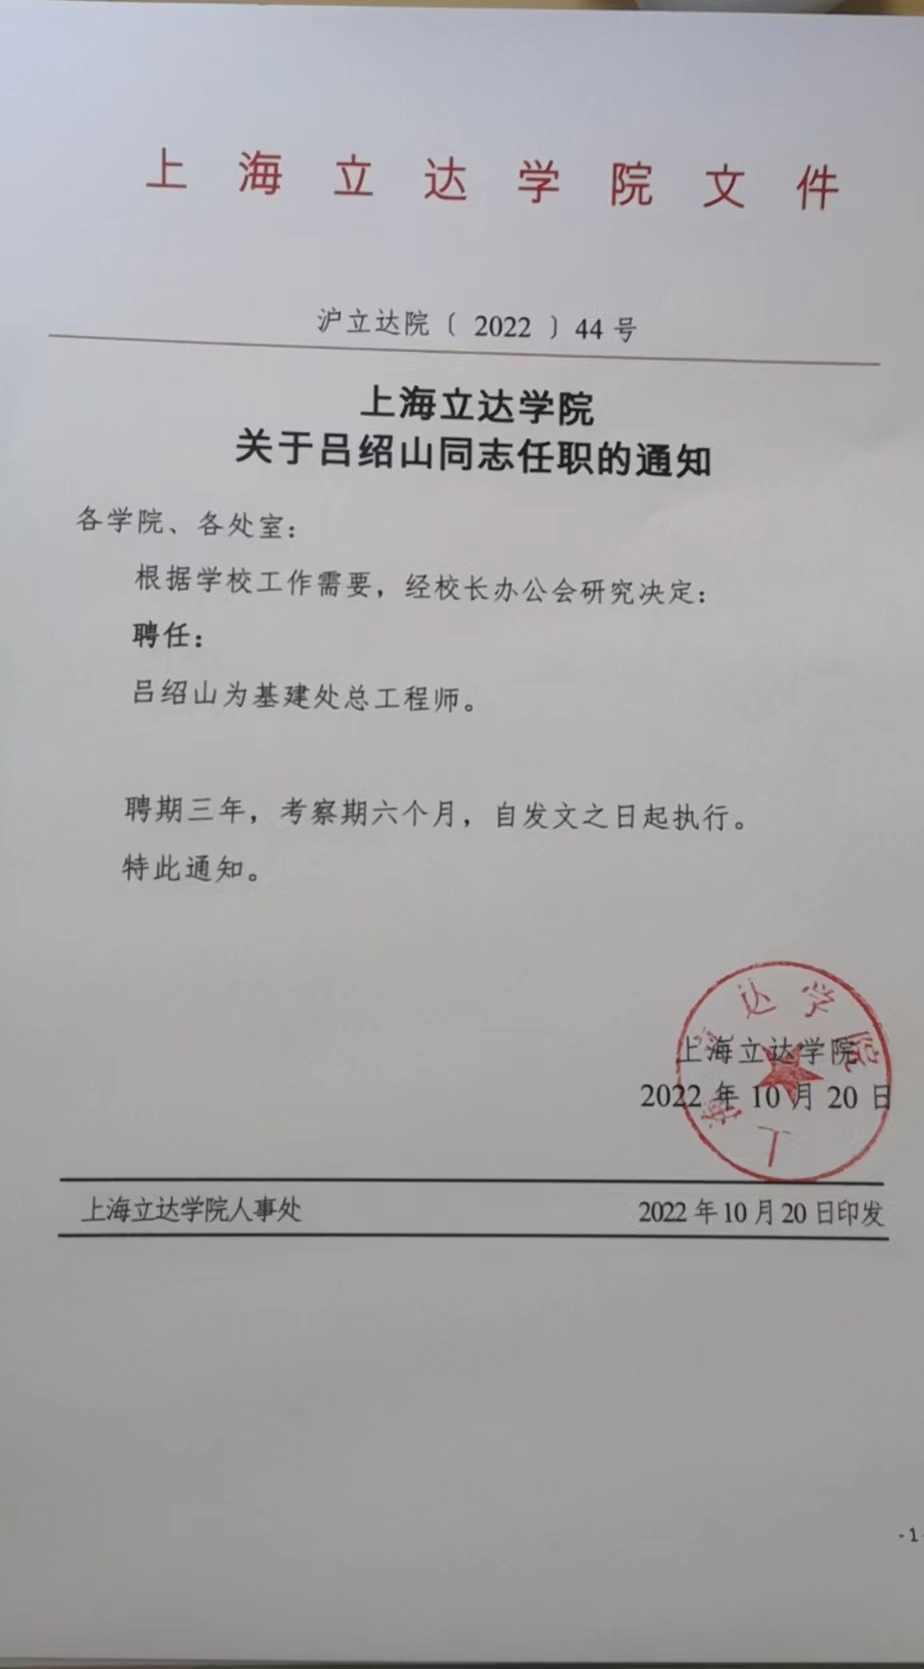 上海立达学院关于吕绍山职务聘任的通知